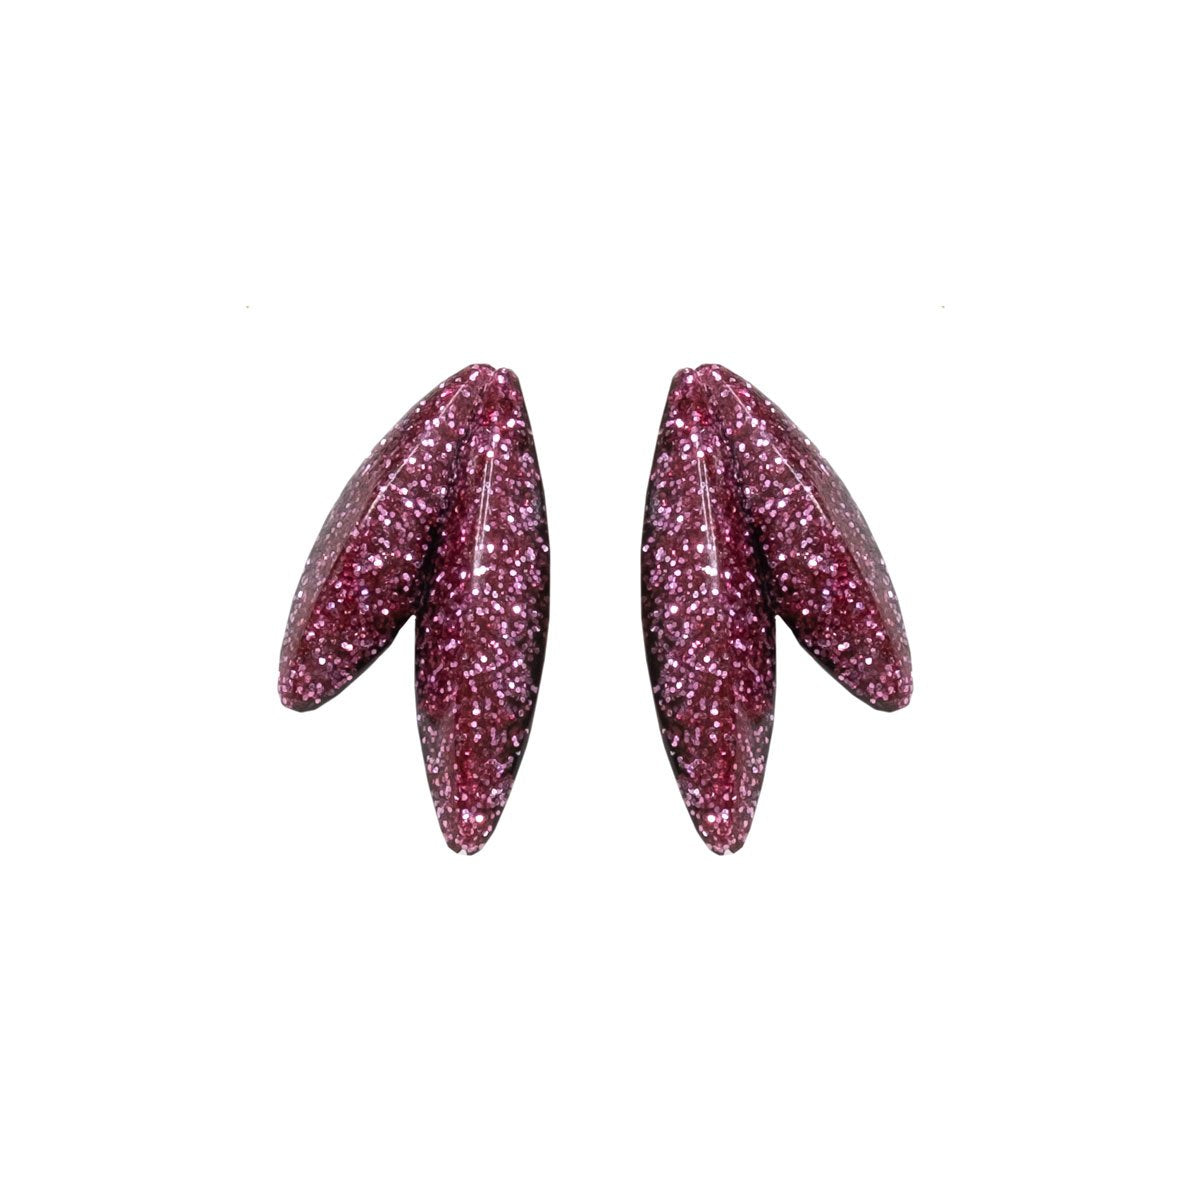 Twin-LEAVES ✕ Shine earrings, pink